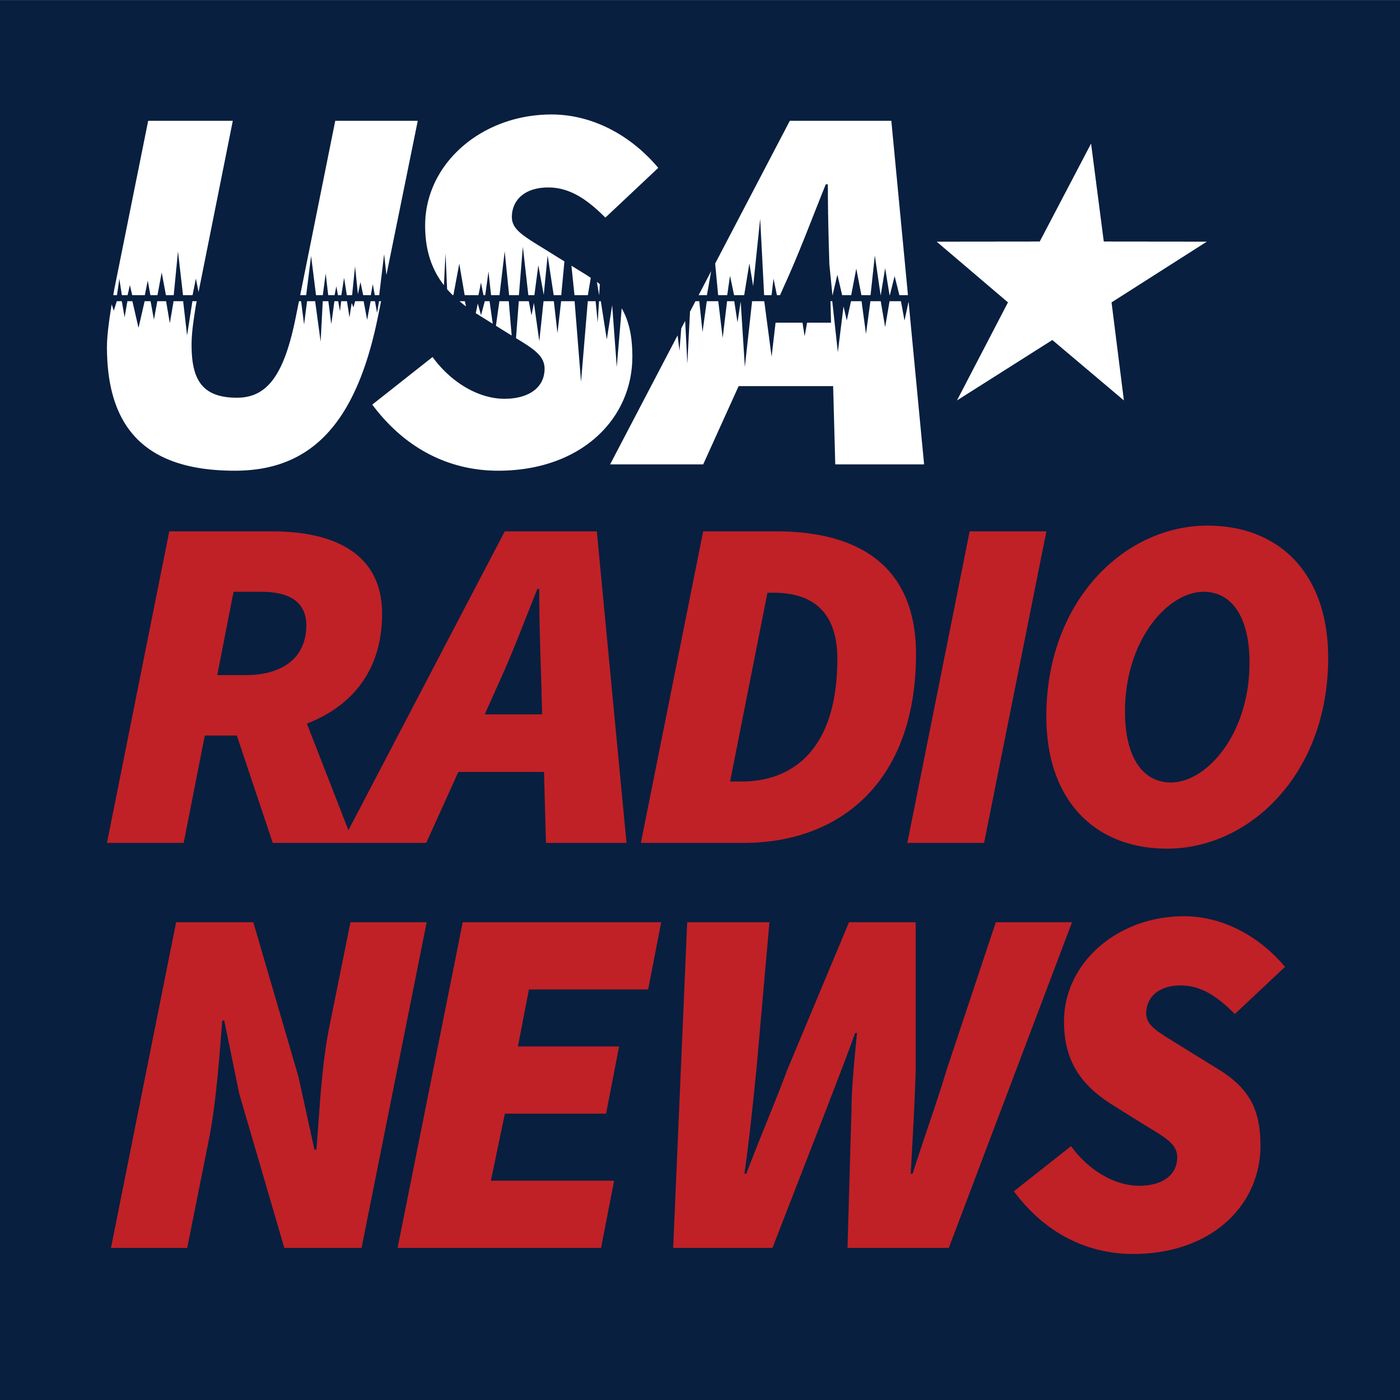 USA Radio News 043022 Hour 13